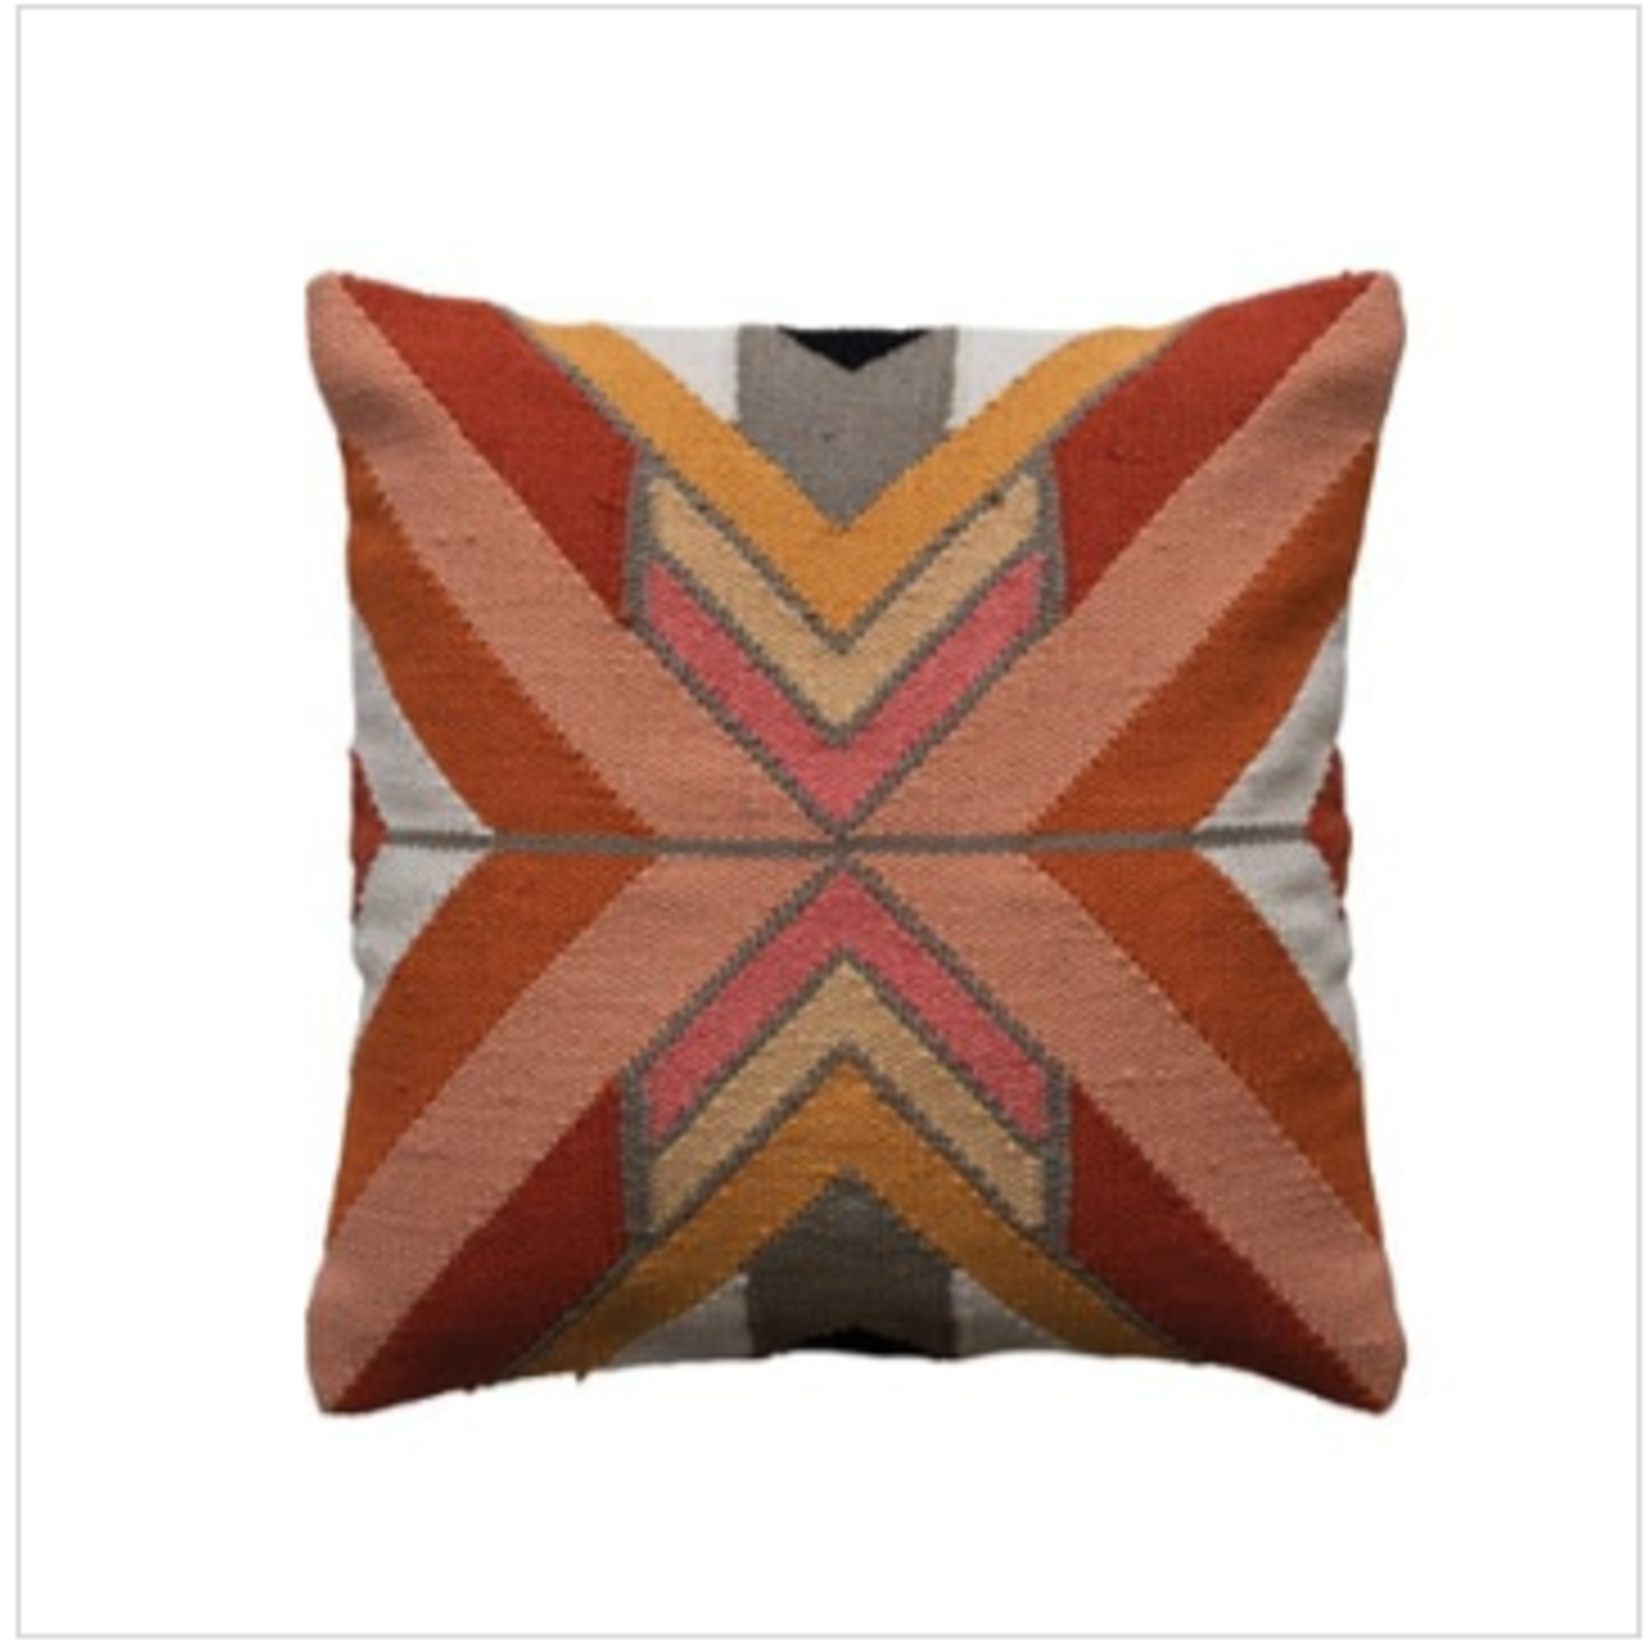 creative Co-op 20" Square Woven Cotton Pillow w/ Chevron pattern